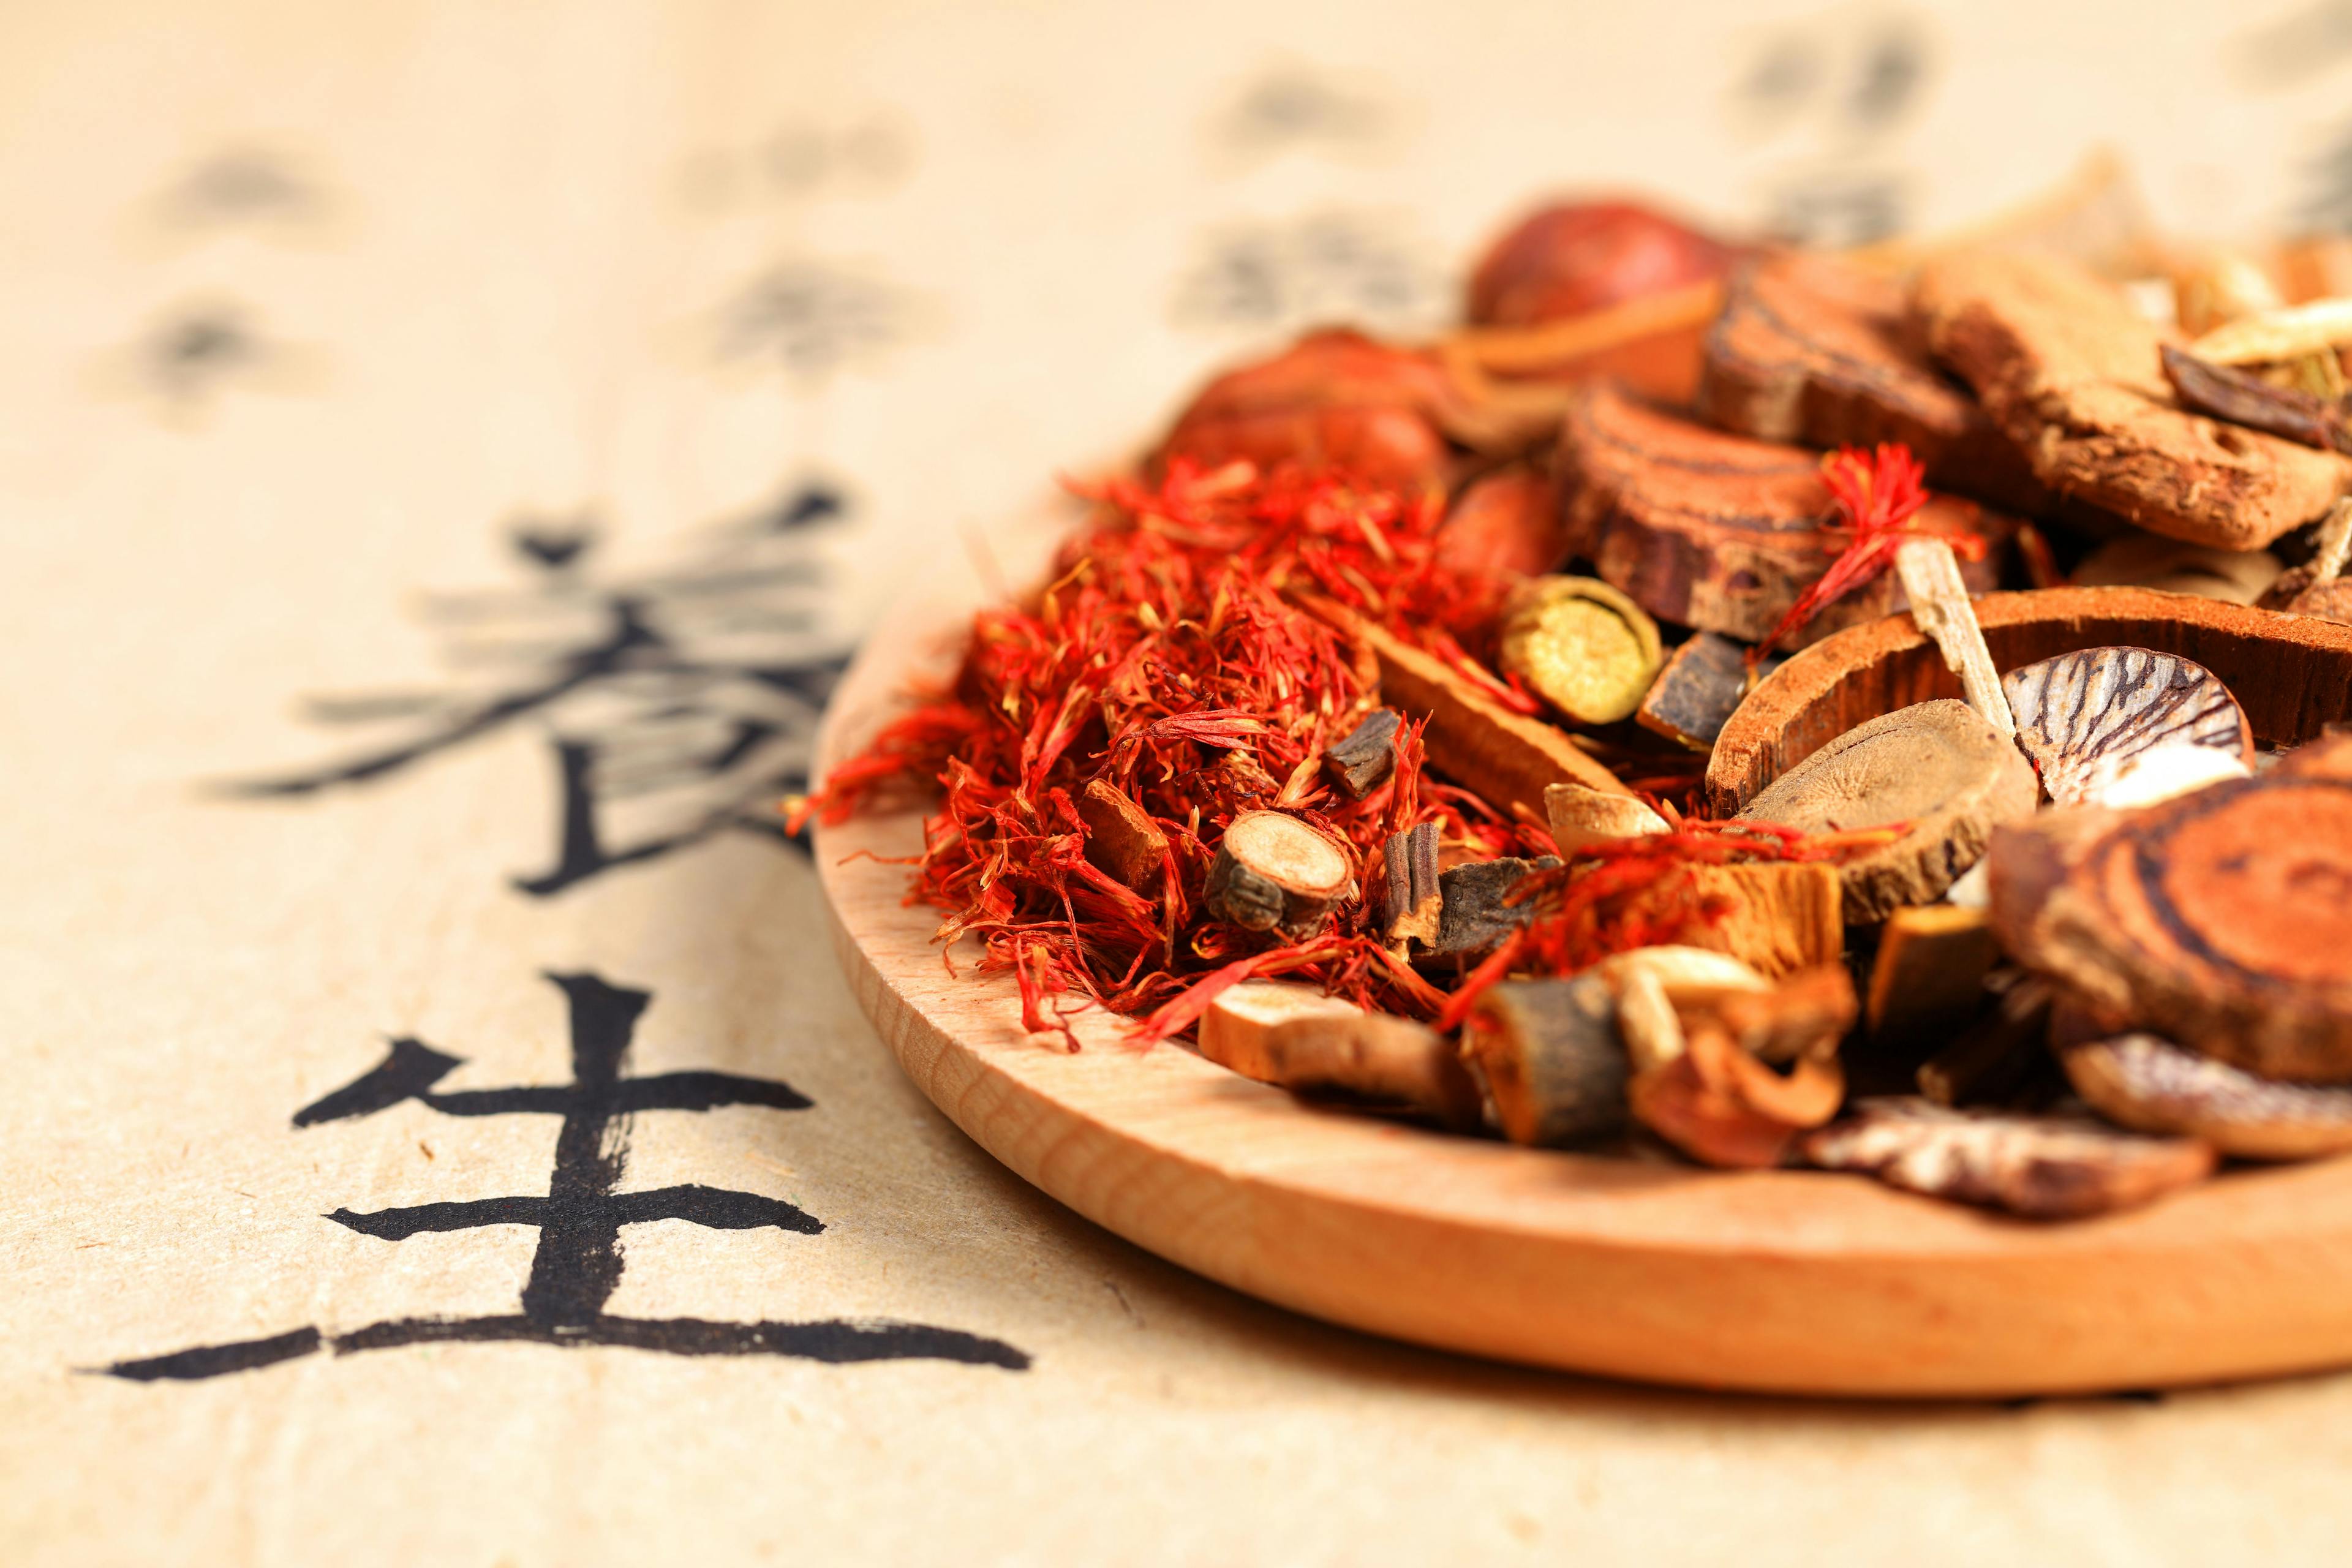 Chinese herbal medicine | Image Credit: © zhengzaishanchu - stock.adobe.com